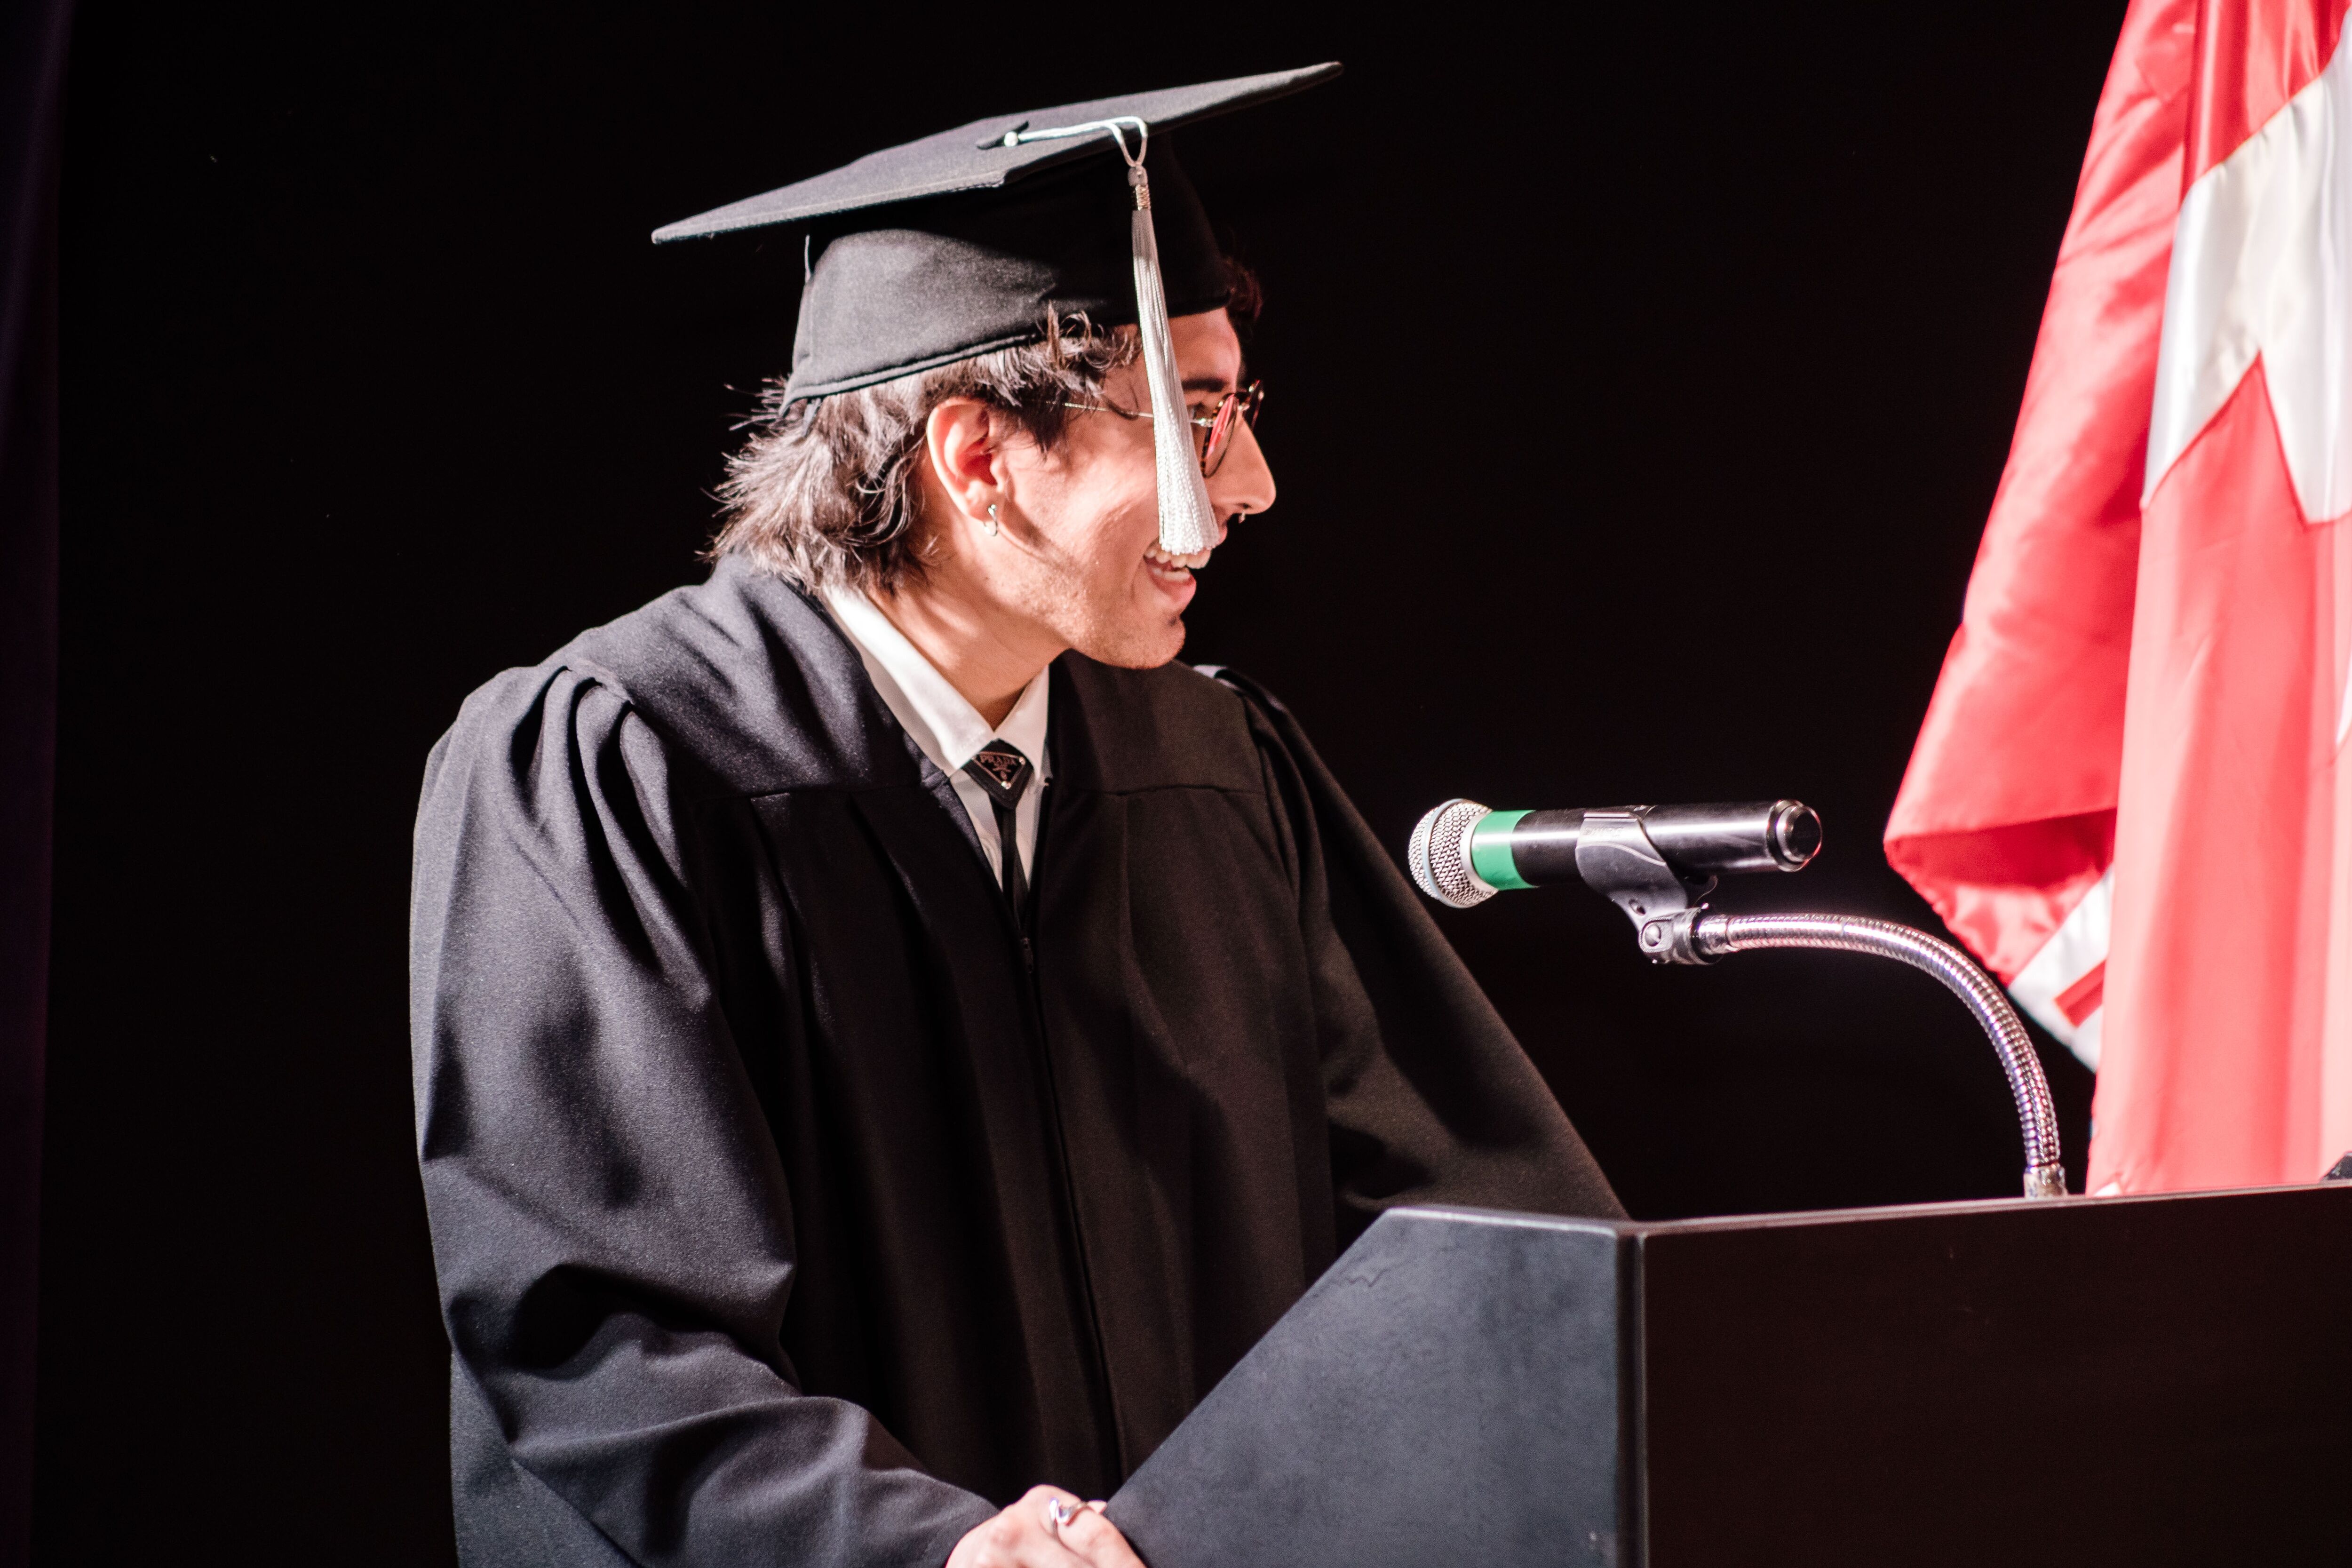 Un graduado entrega alegremente un discurso de apertura en una ceremonia de graduación, vestido con el atuendo académico tradicional y exudando confianza.